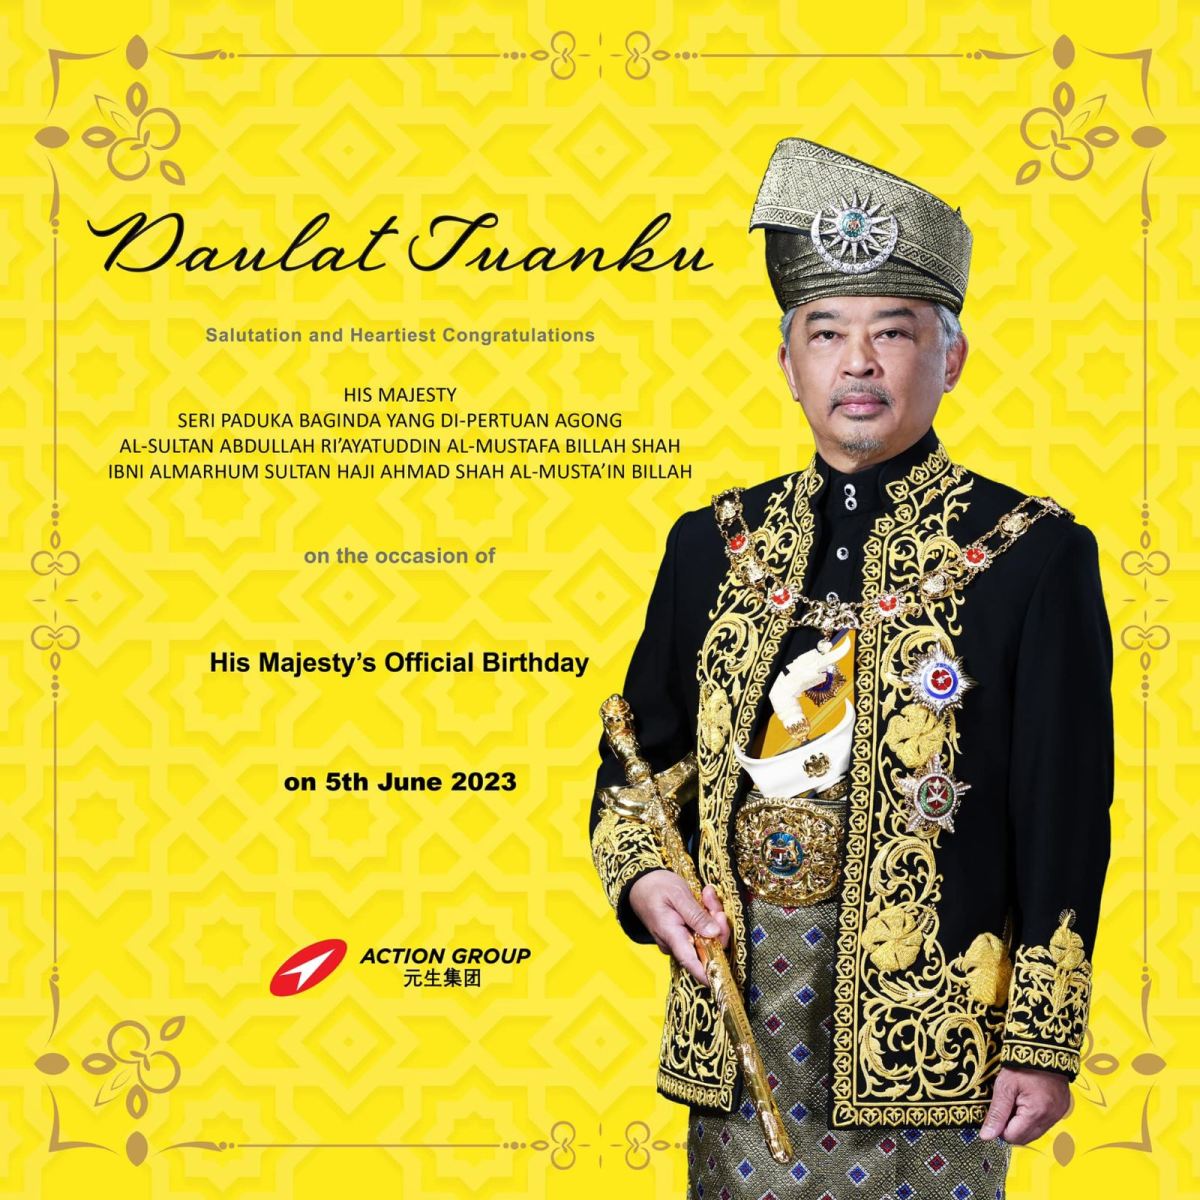 Happy Birthday, Your Majesty! Daulat Tuanku!